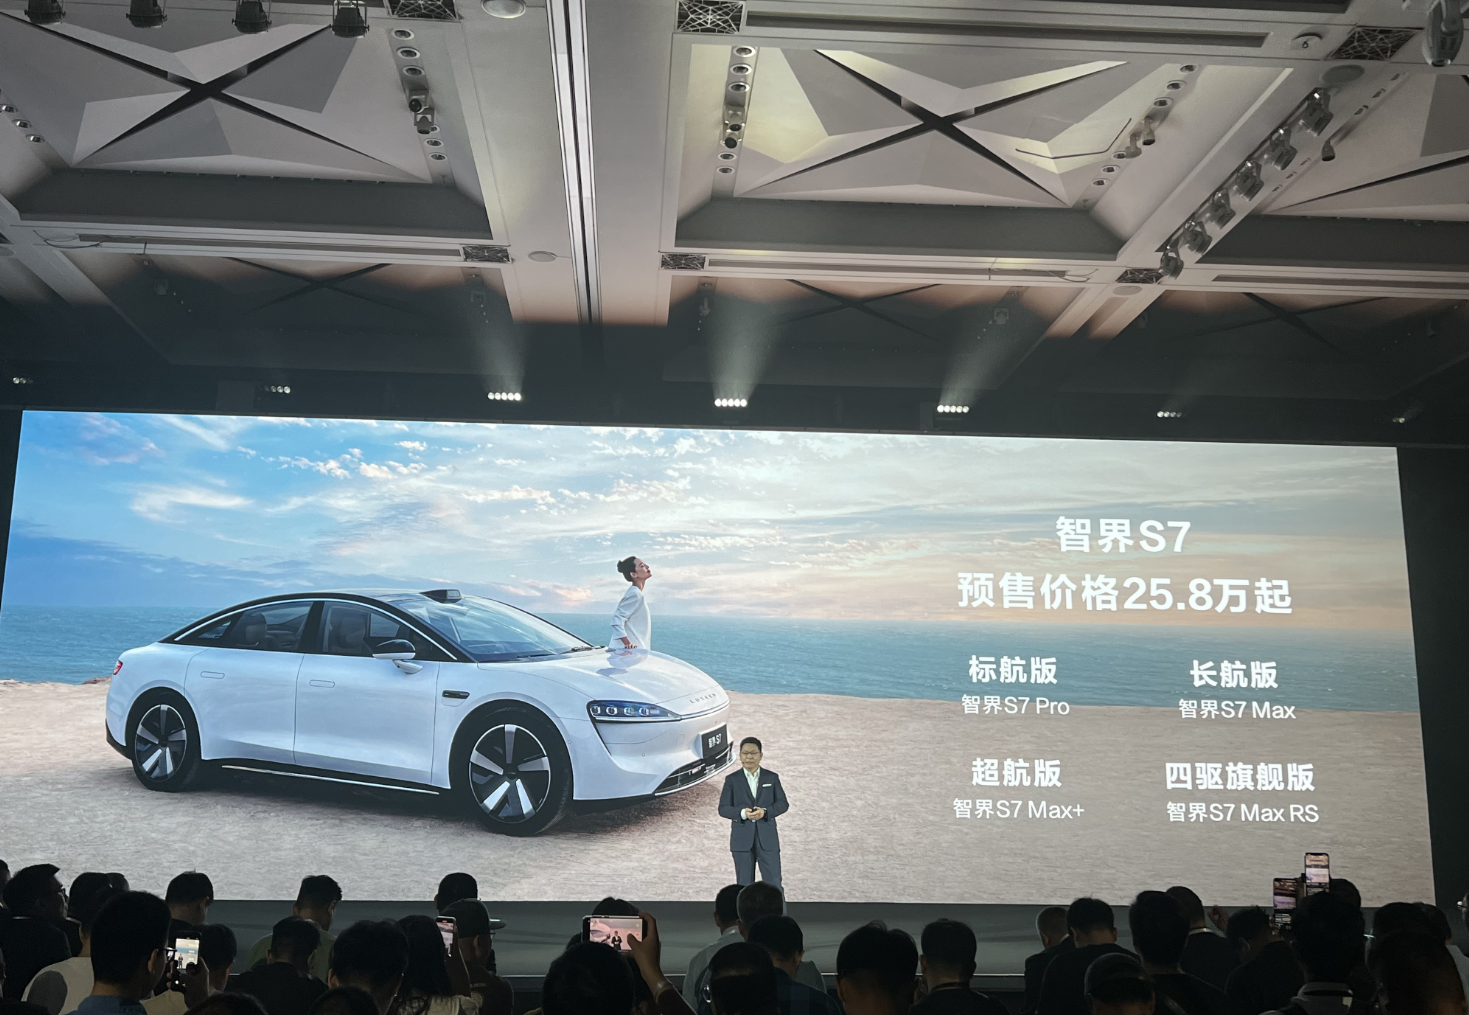 华为智选车首款轿车智界S7预售价25.8万元起。 华龙网 张世钊 摄